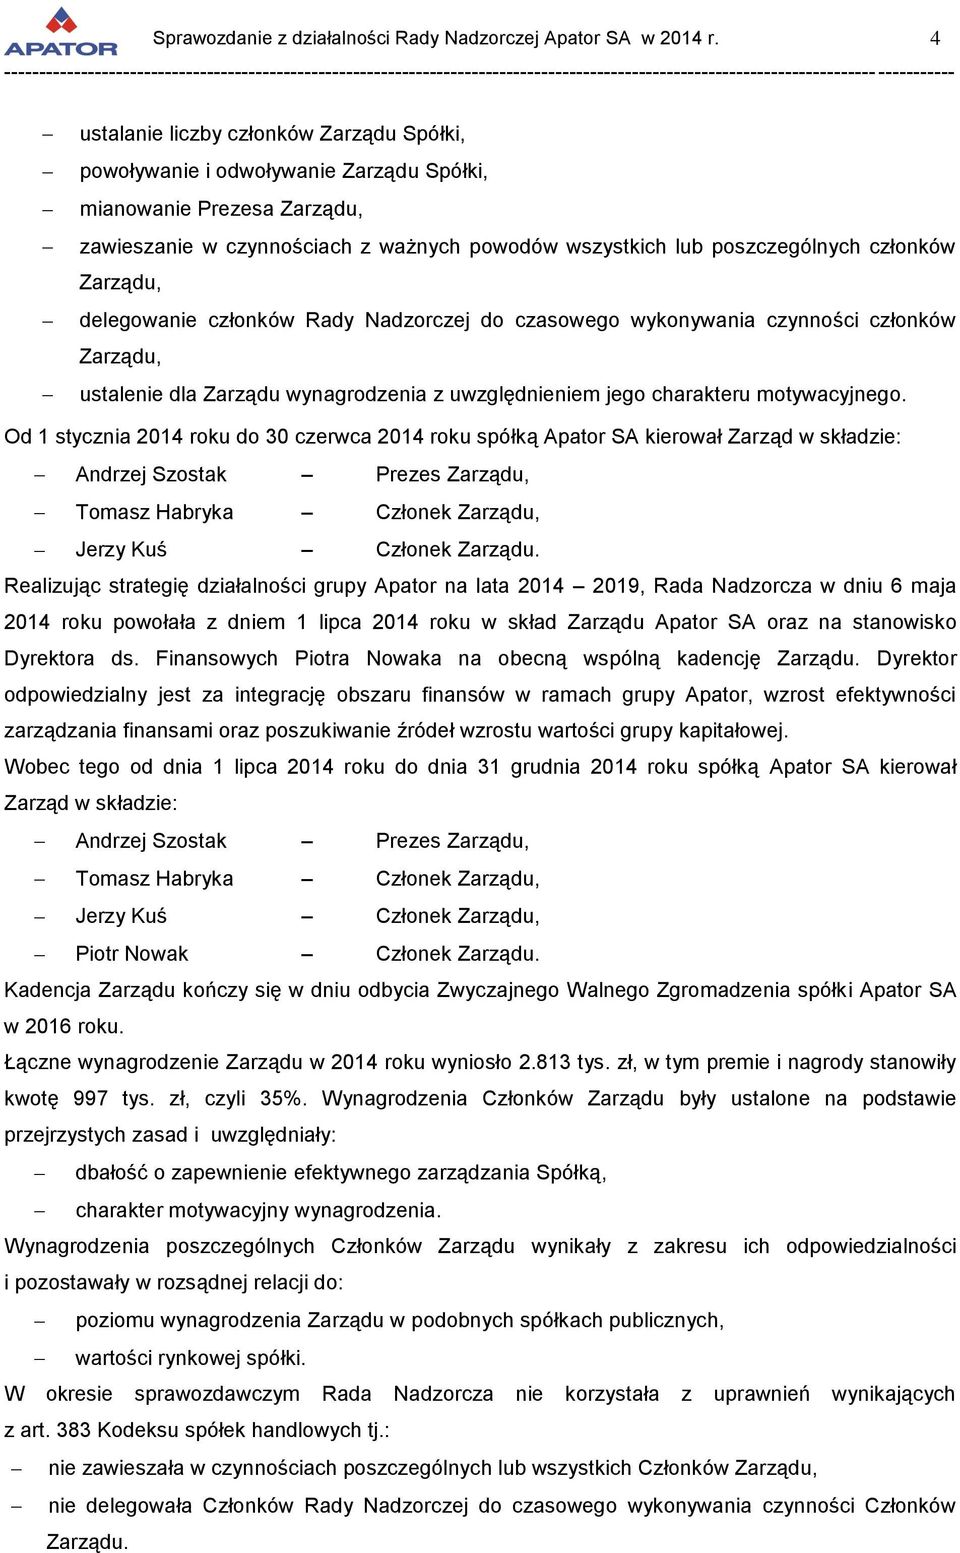 Od 1 stycznia 2014 roku do 30 czerwca 2014 roku spółką Apator SA kierował Zarząd w składzie: Andrzej Szostak Prezes Zarządu, Tomasz Habryka Członek Zarządu, Jerzy Kuś Członek Zarządu.